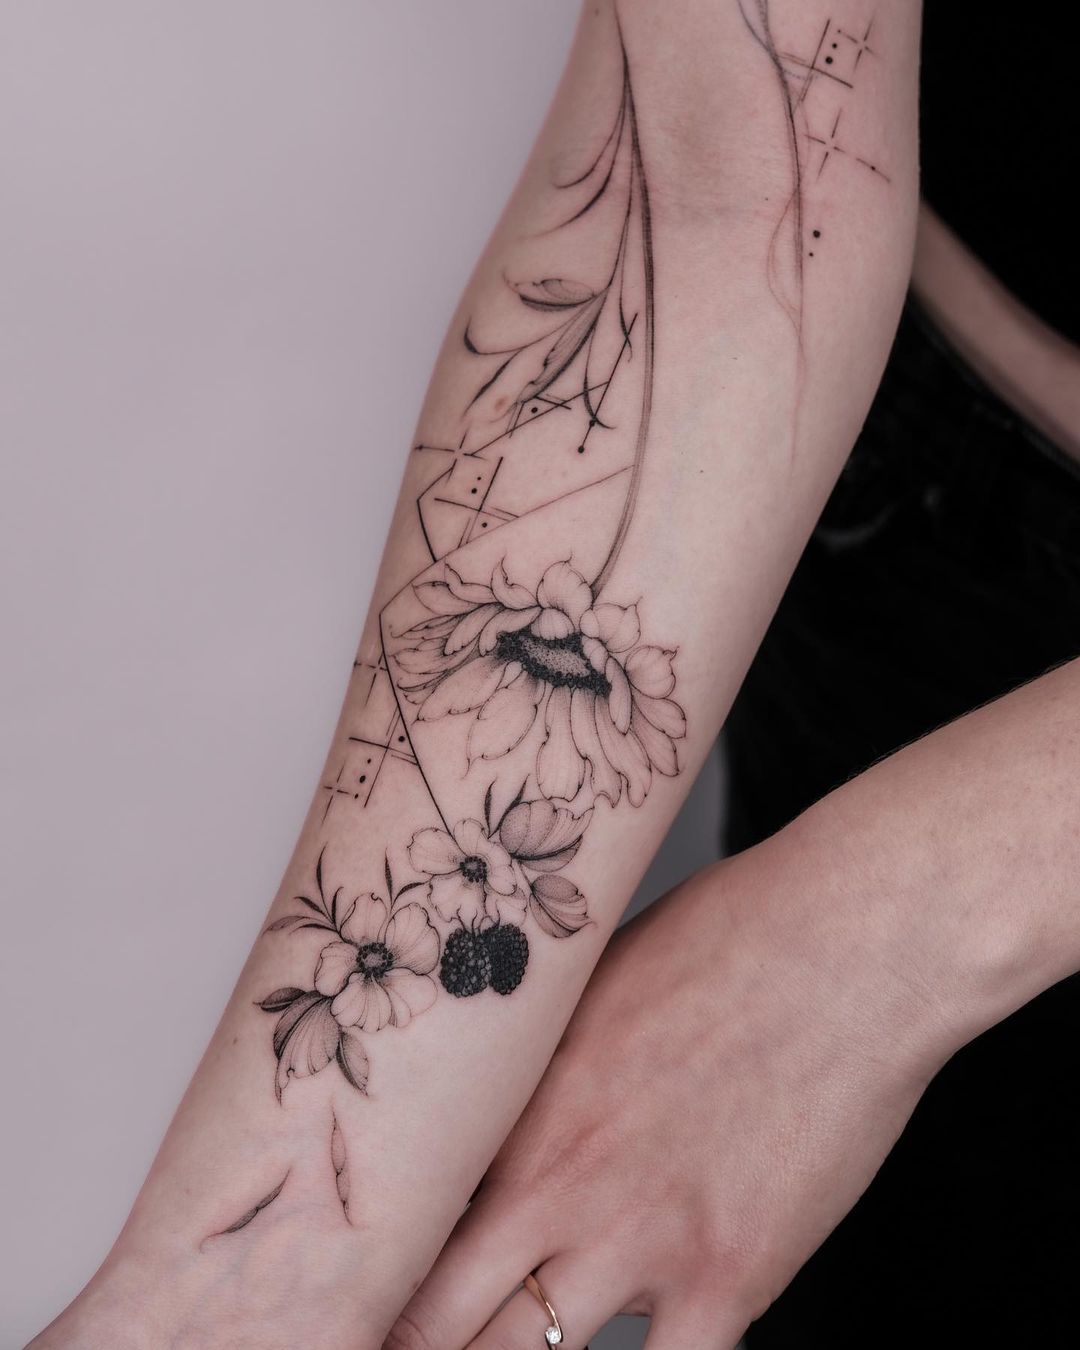 flower tattoo on forearm by lasstattoo